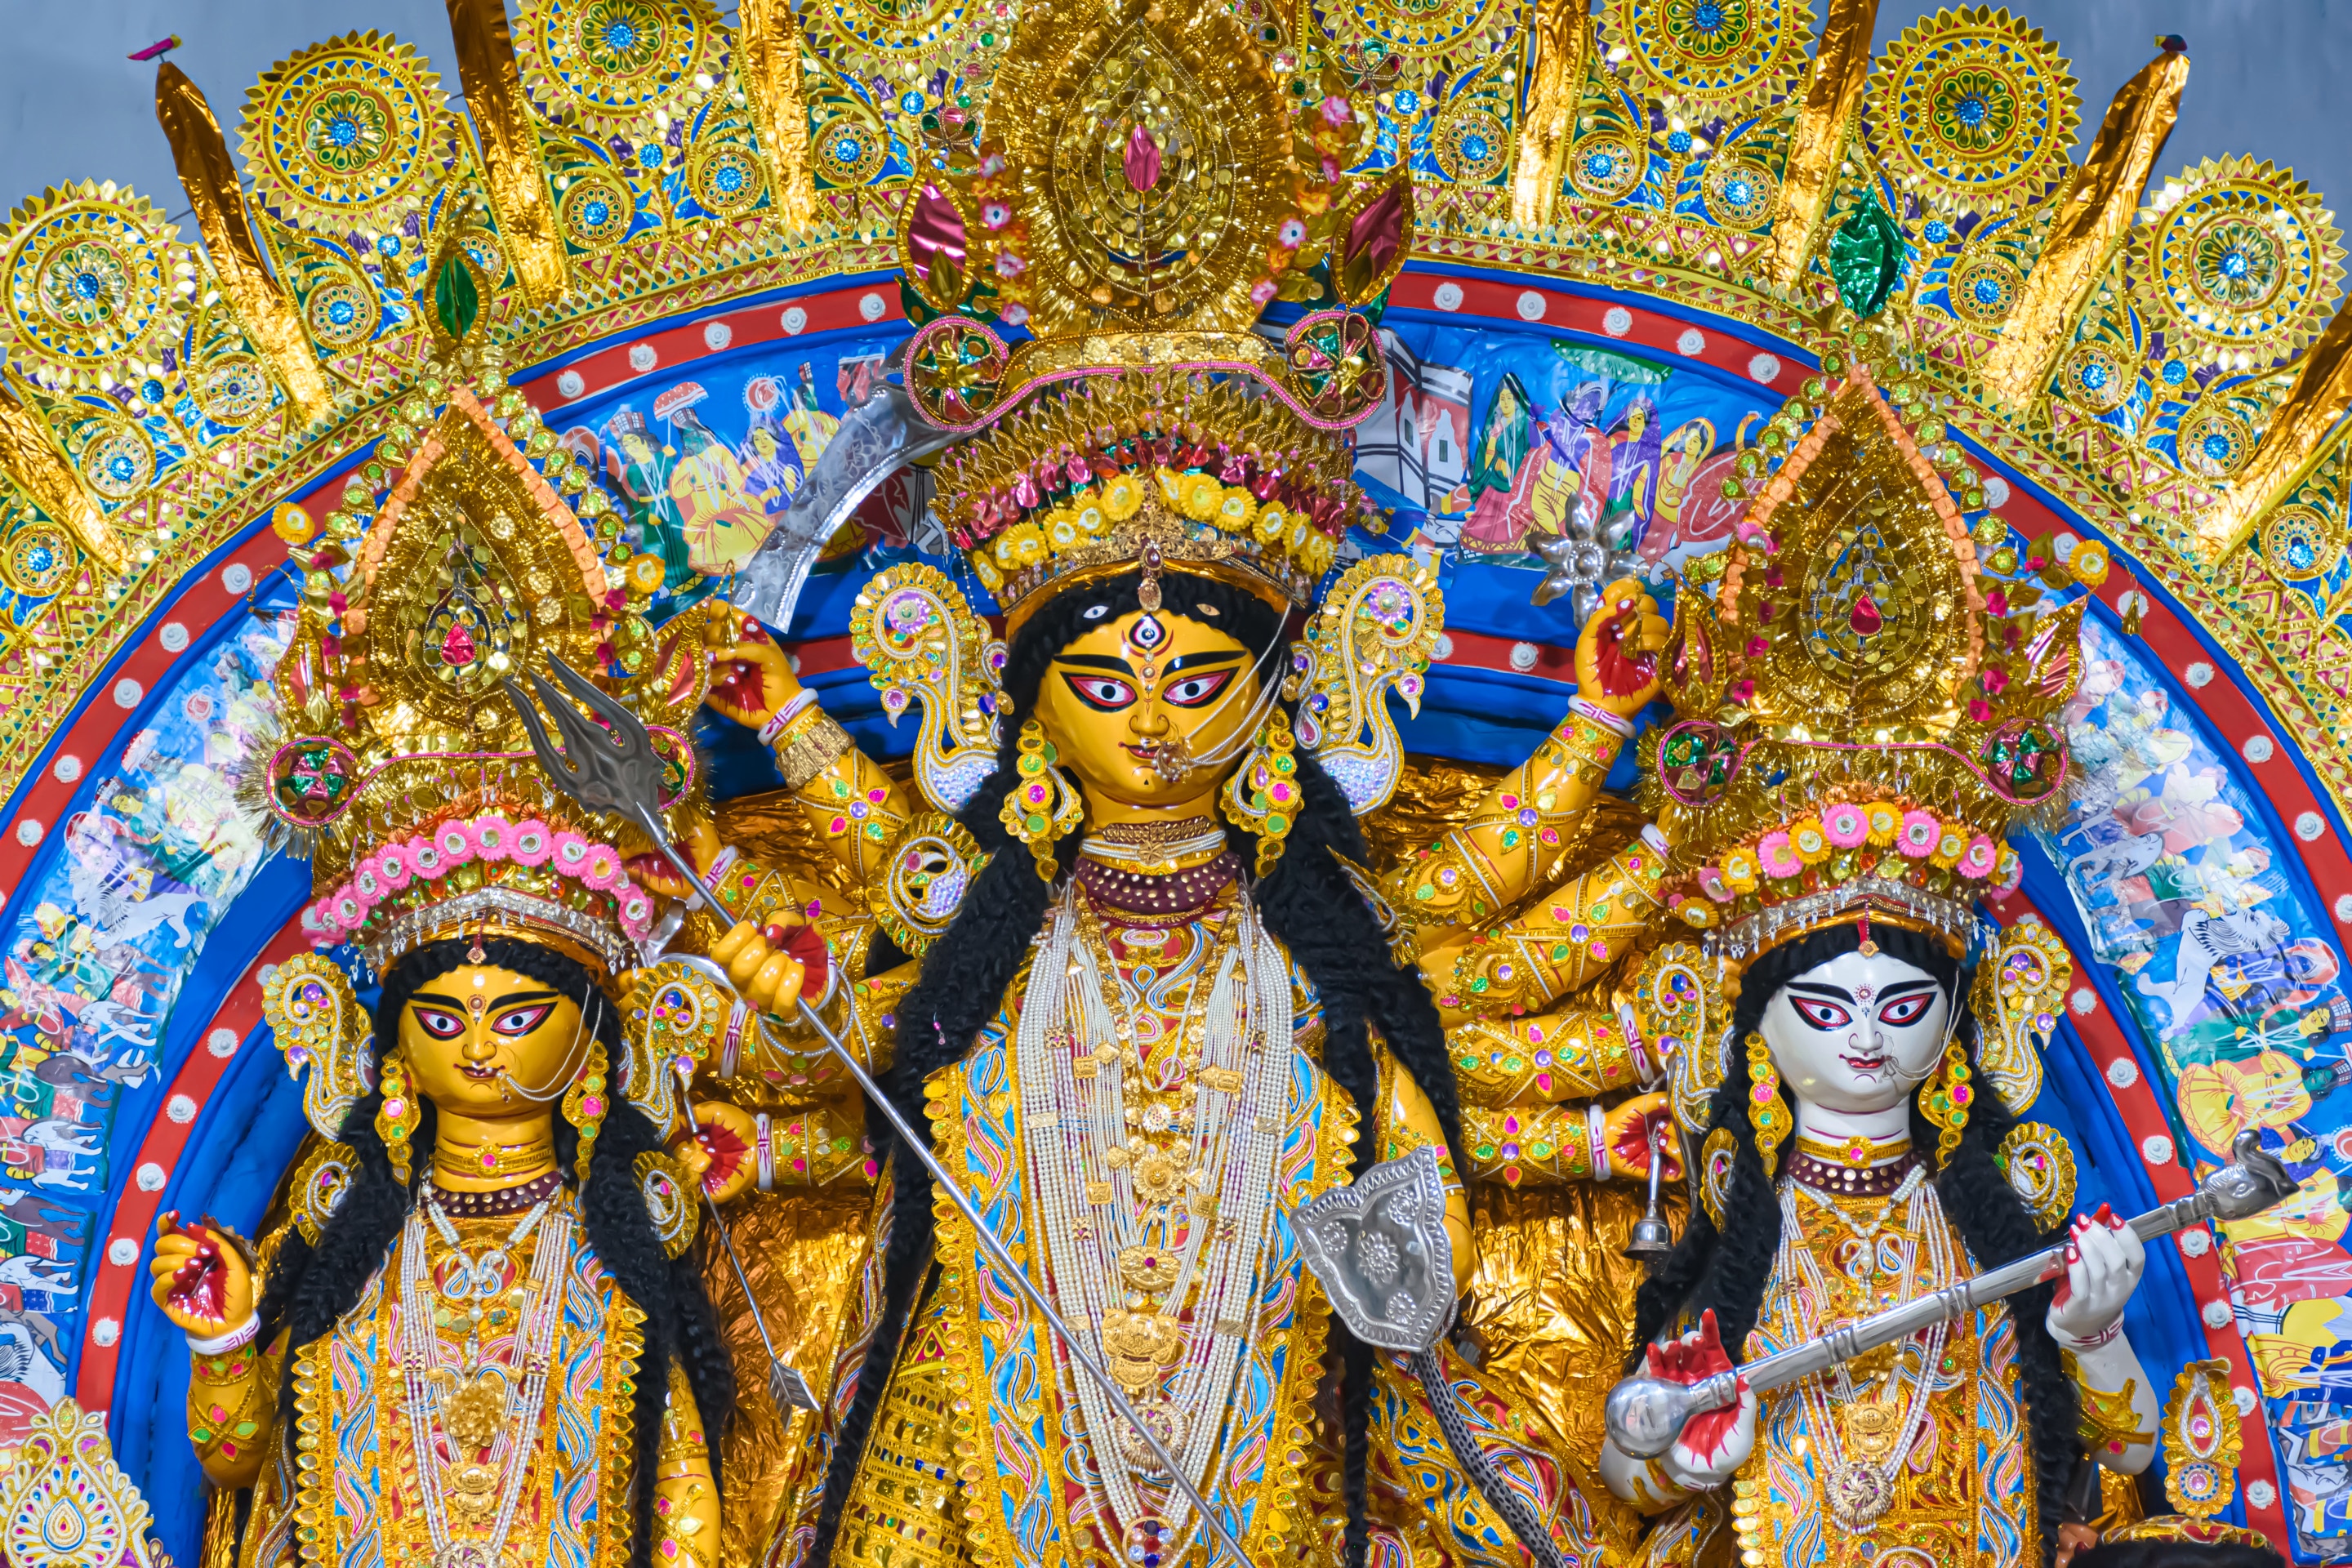 Durga Puja Recipes